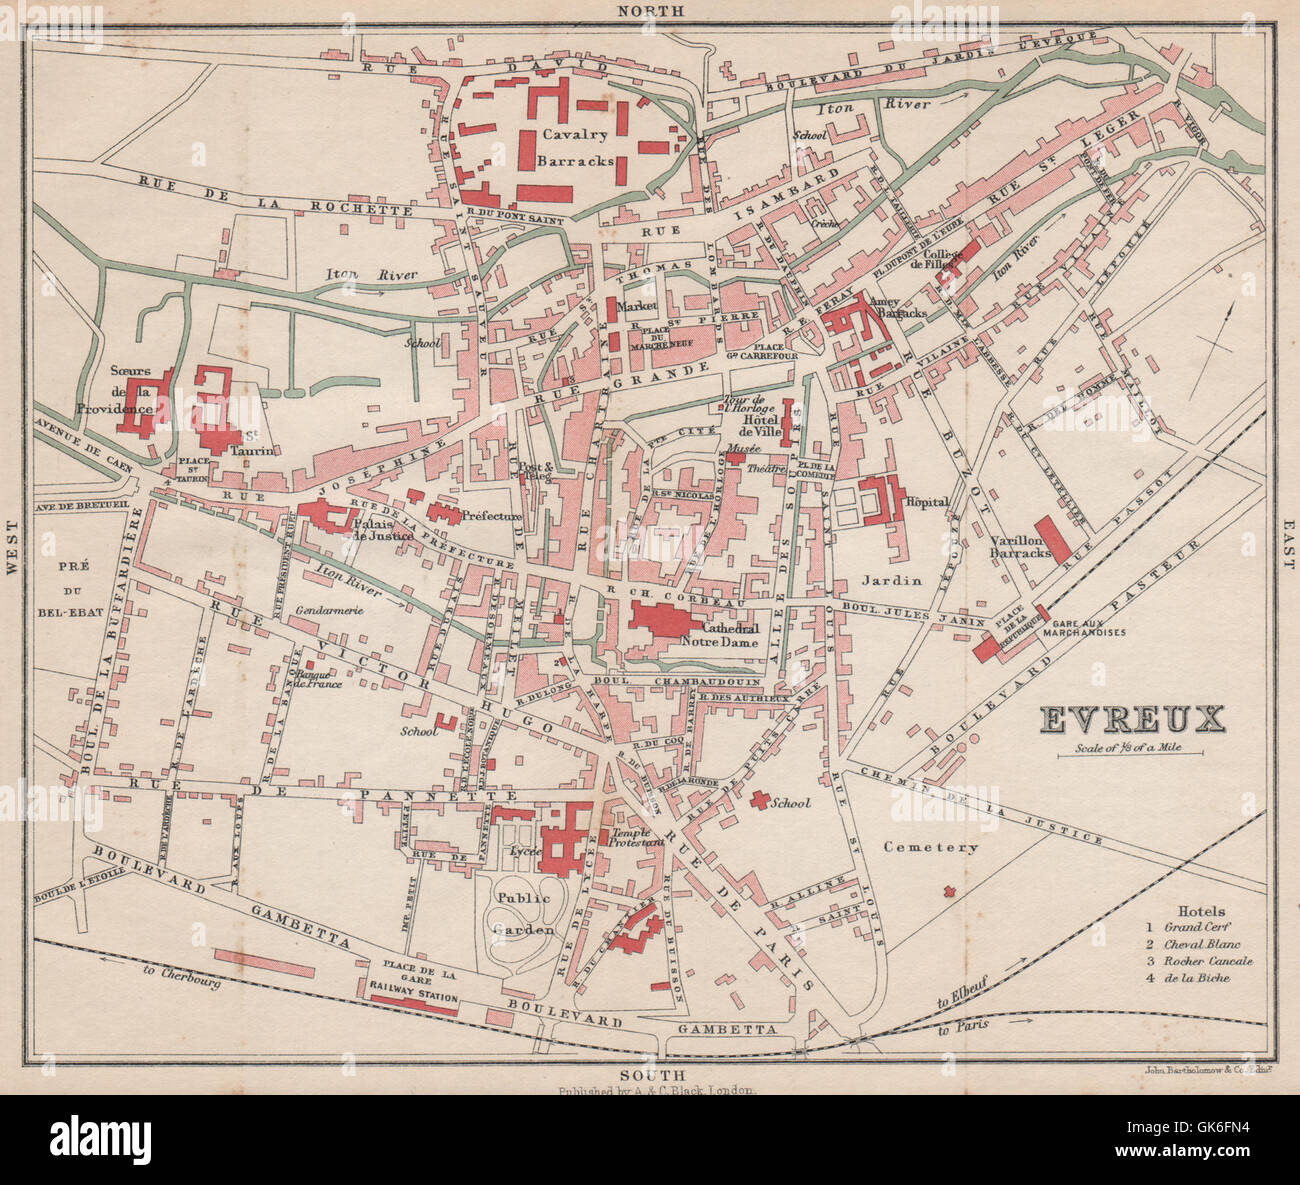 EVREUX antique town city plan de la ville. Eure, 1913 antique map Stock Photo